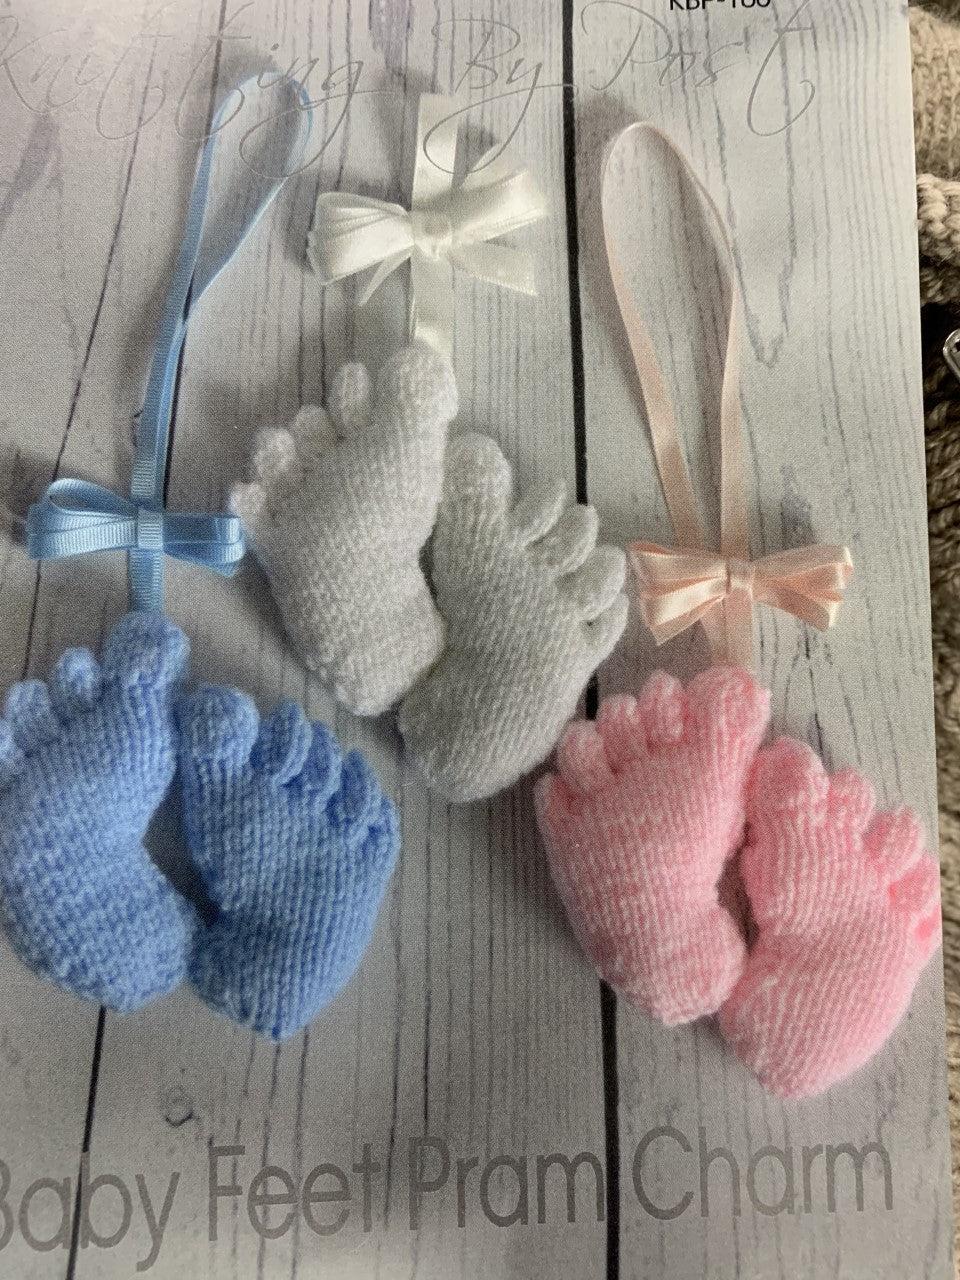 160 KBP-160 Baby Feet Pram Charm/soft toy in dk knitting pattern